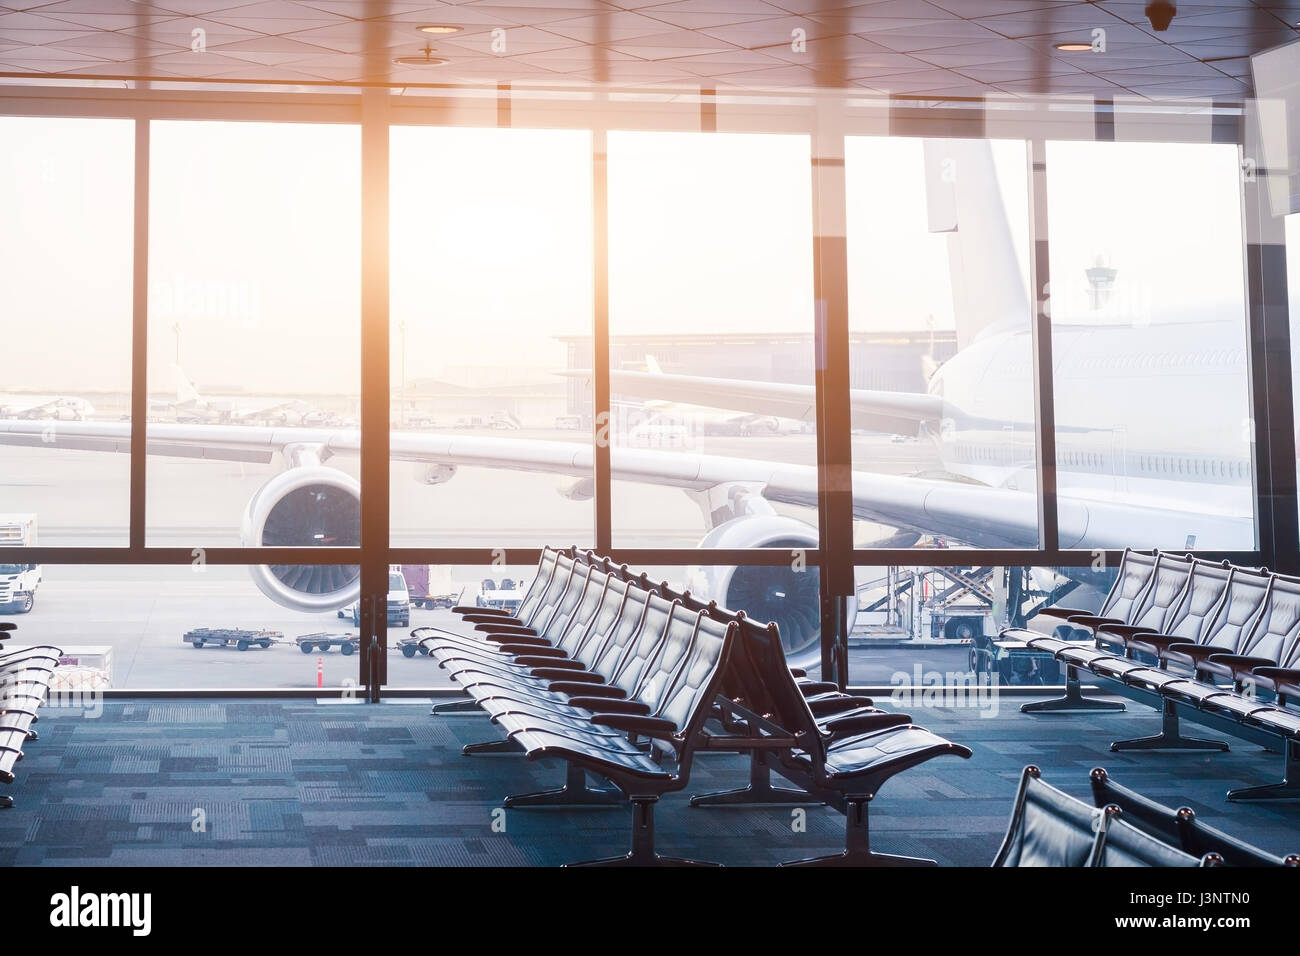 Leeren Flughafen boarding Gate Lounge mit Sitzreihen und Fenster mit Blick auf eine große Flugzeuge startbereit Stockfoto